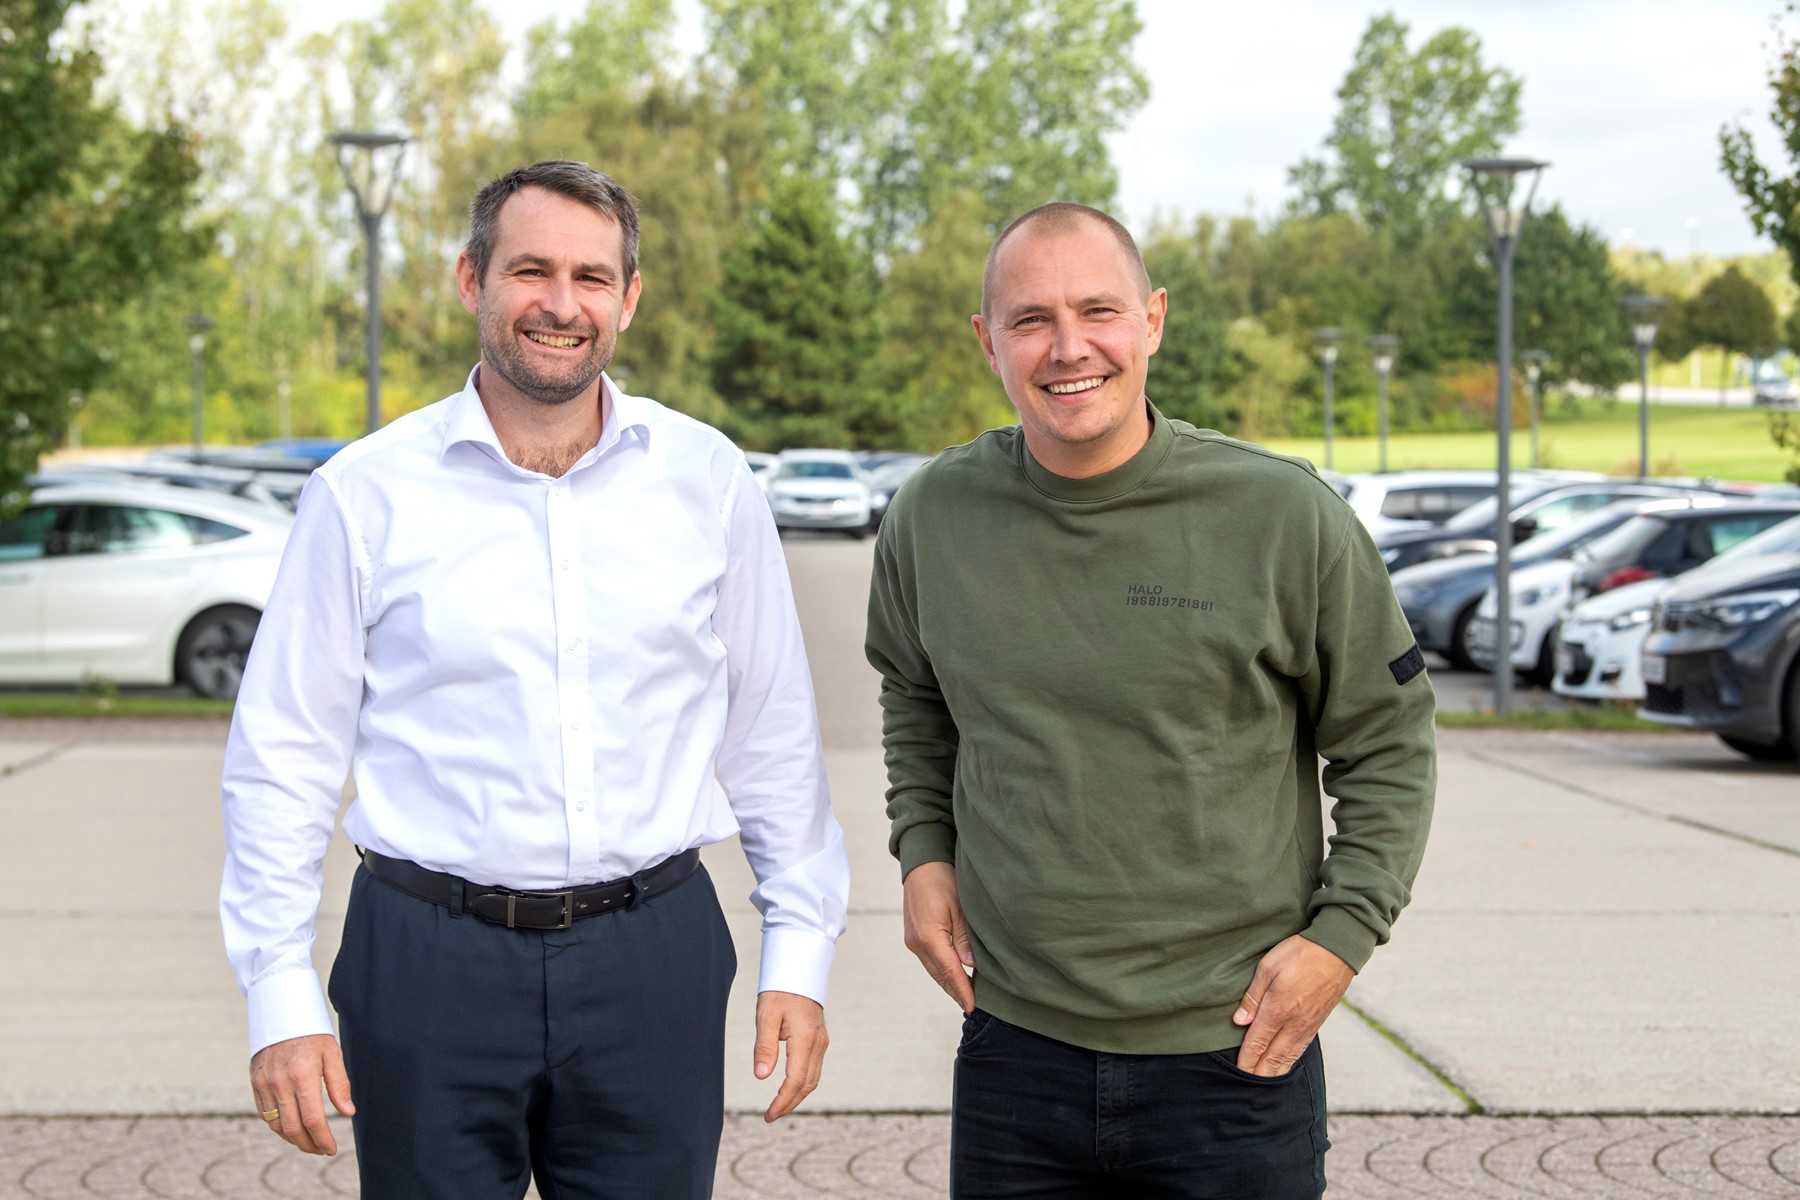 Thomas Hugo Møller, direktør i Great Dane Airlines, og Rasmus Nielsen, direktør i RareWine, deler i podcasten deres erfaringer med hjemmearbejde. De to direktører har forskellige erfaringer. Foto: Henrik Louis Simonsen.